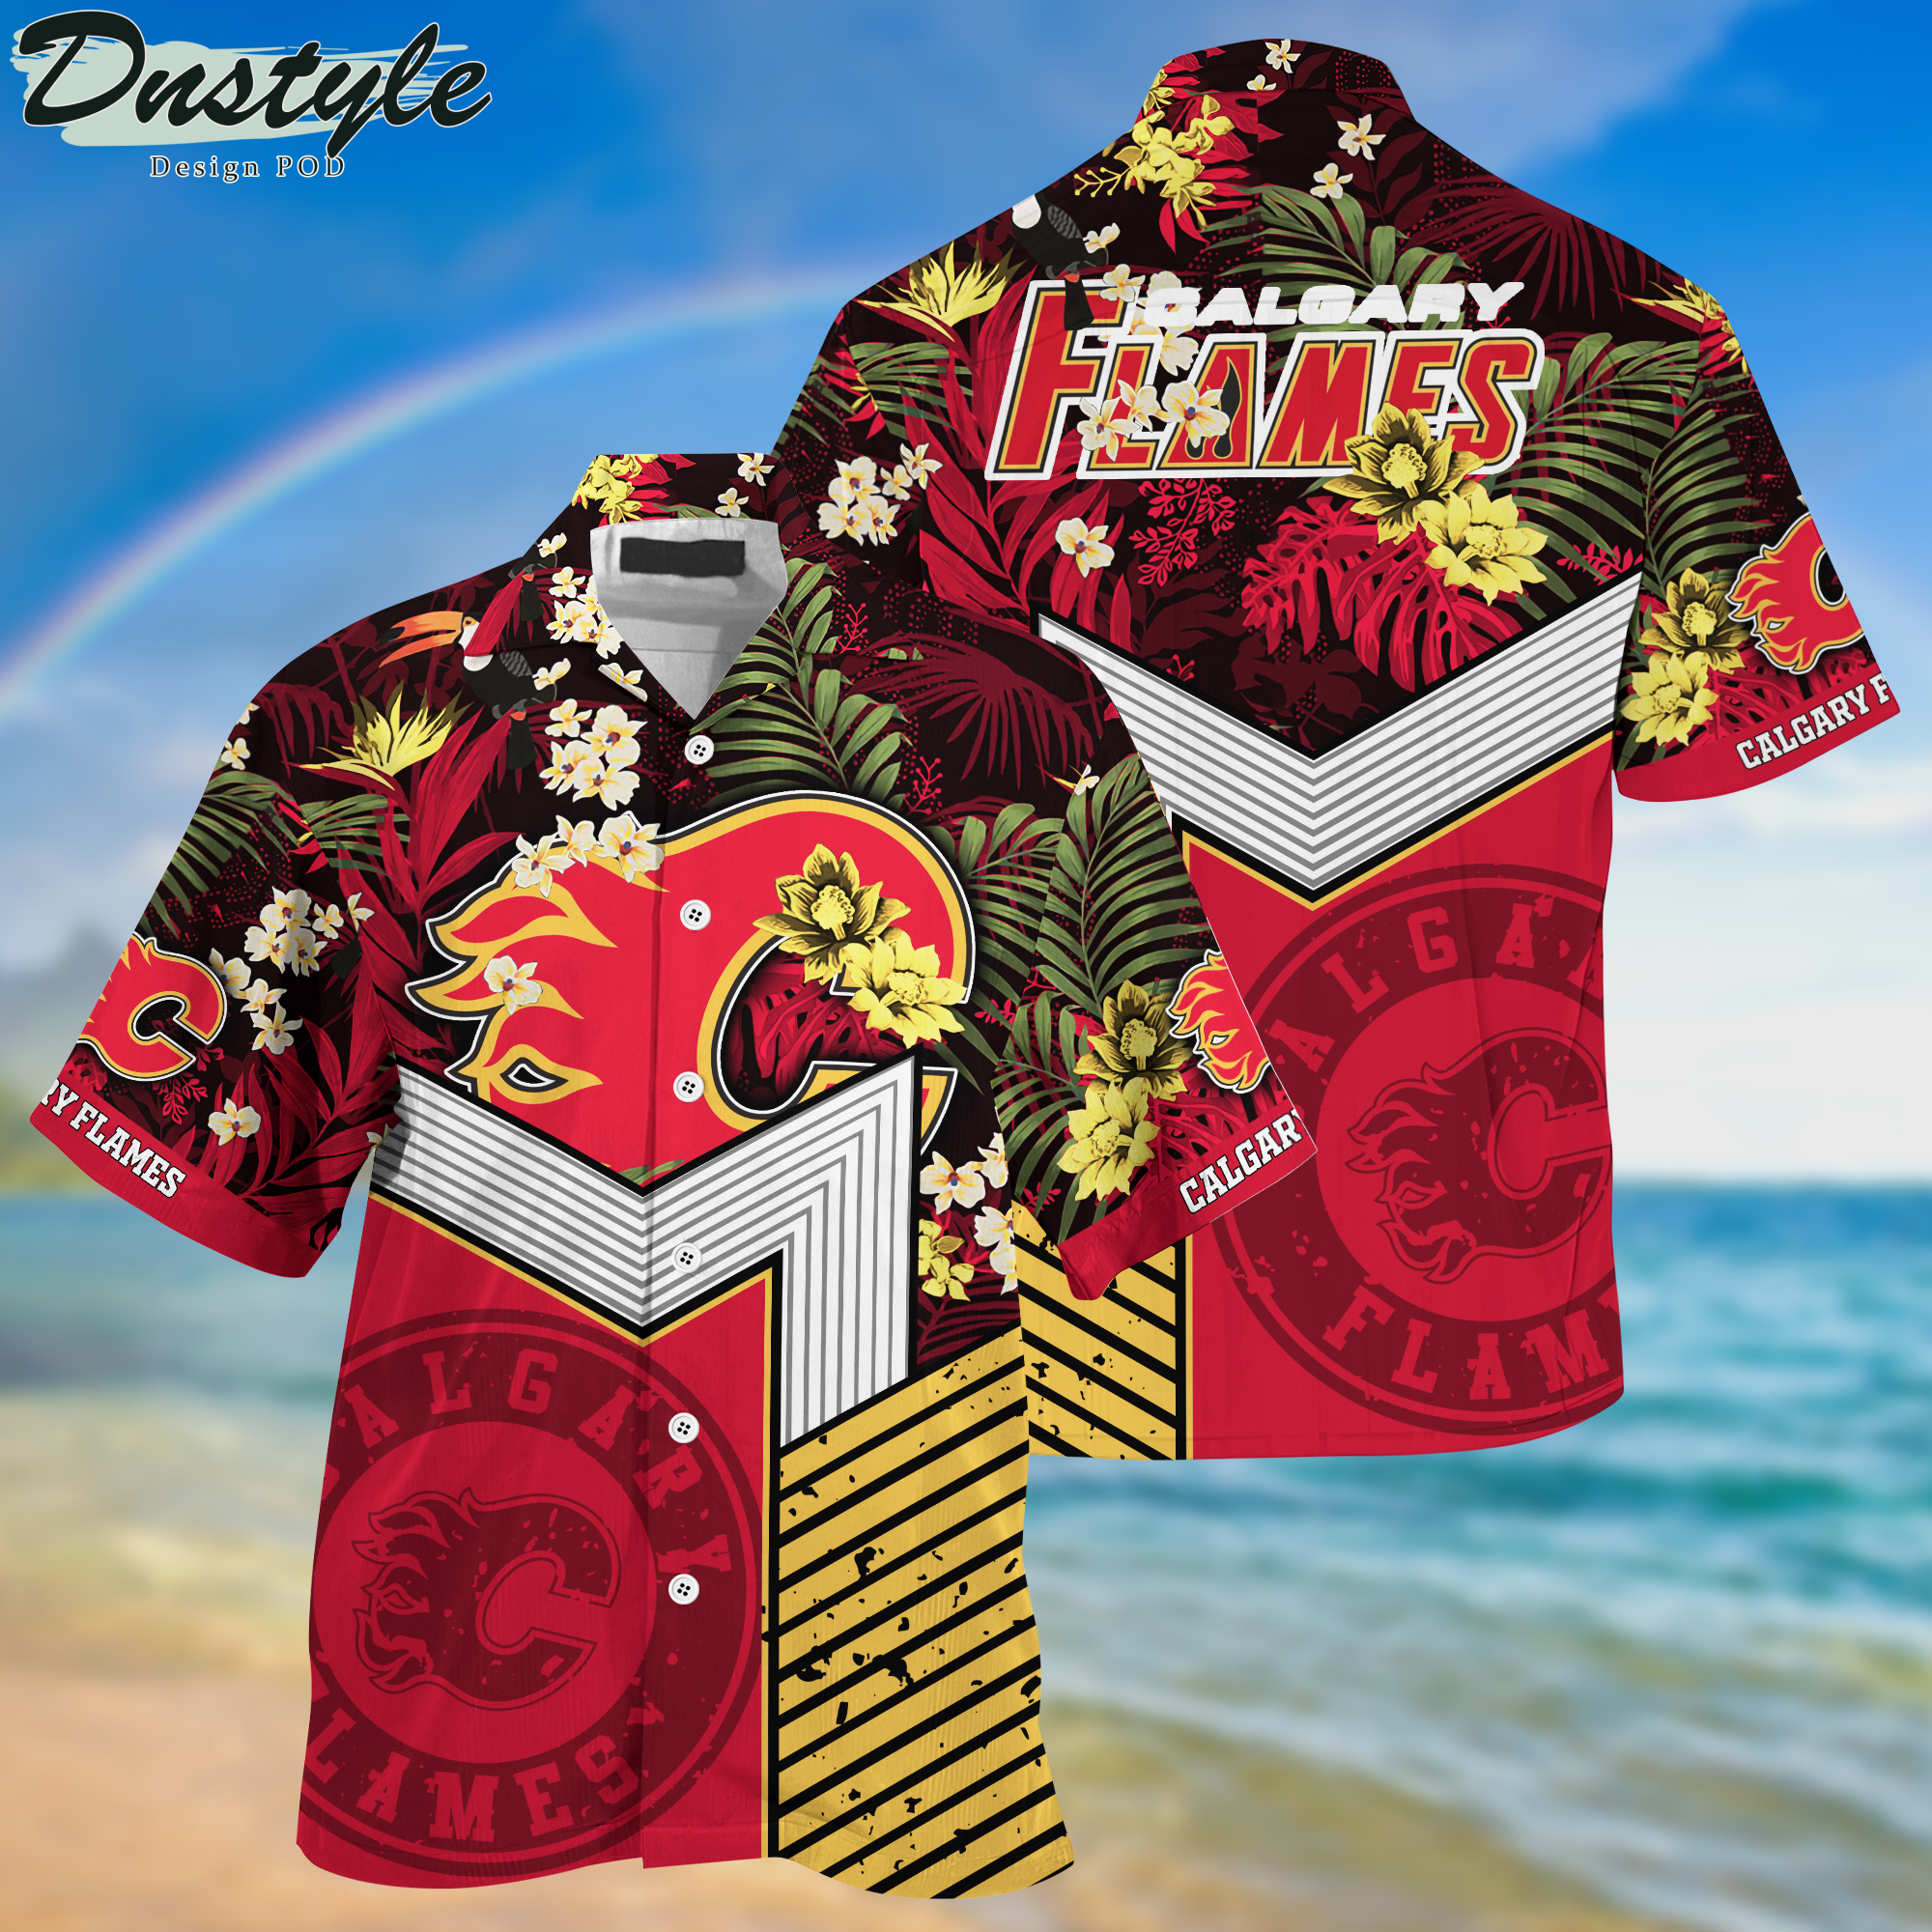 Calgary Flames Hawaii Shirt And Shorts New Collection